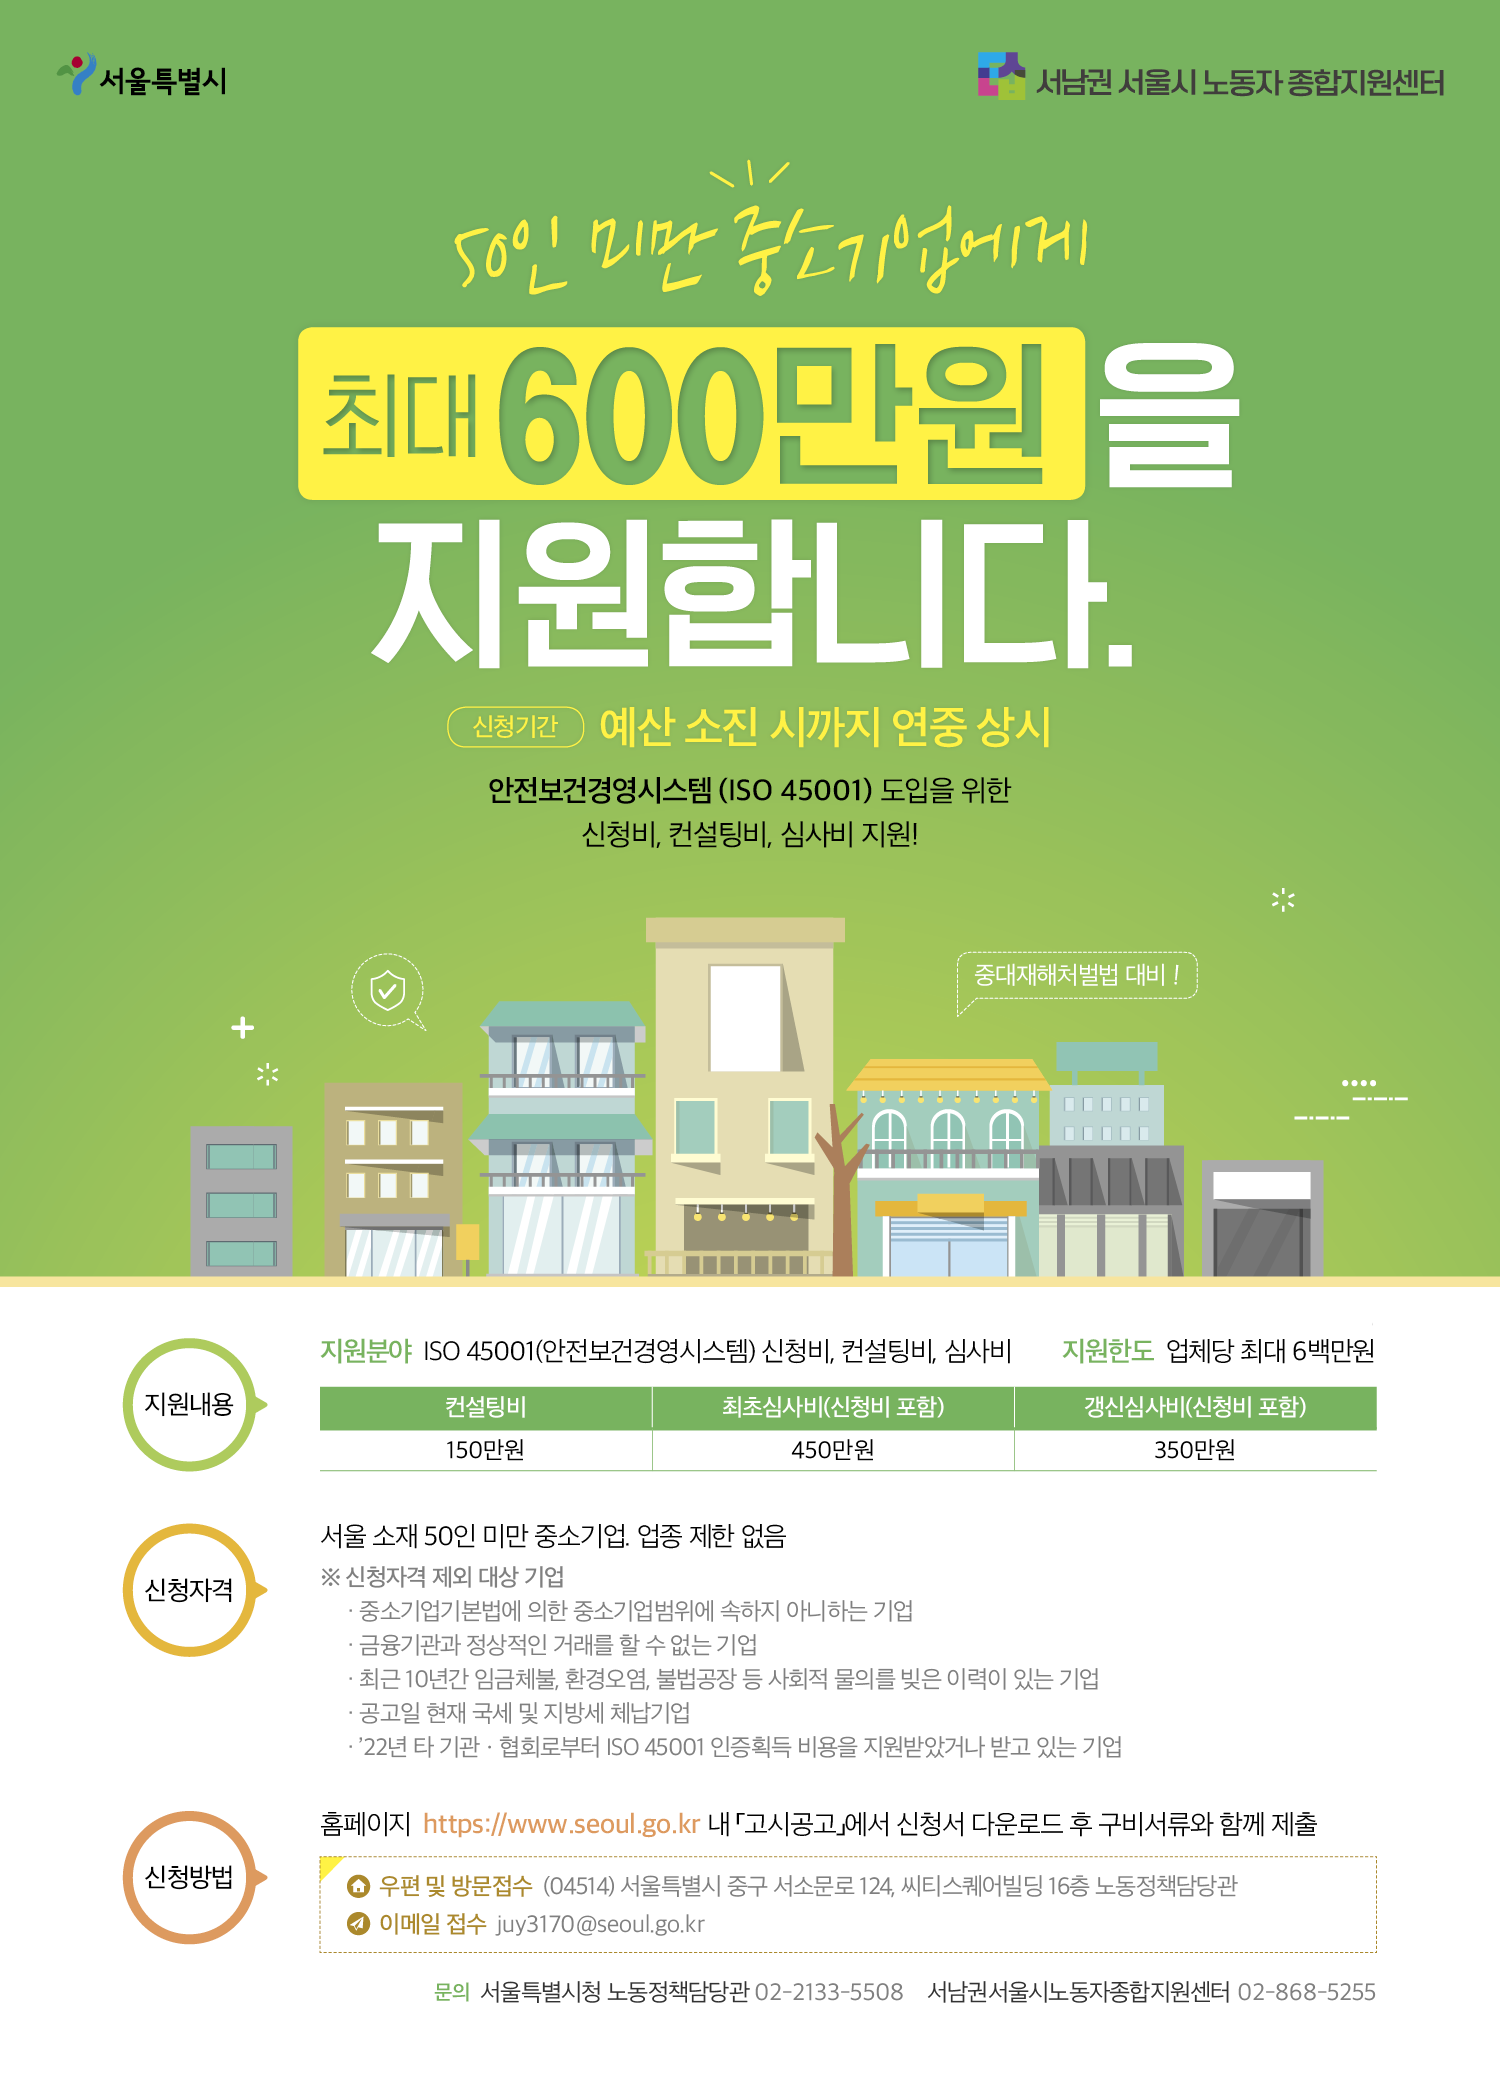 [리플렛] 서울시 안전보건경영시스템(ISO45001) 지원사업 안내